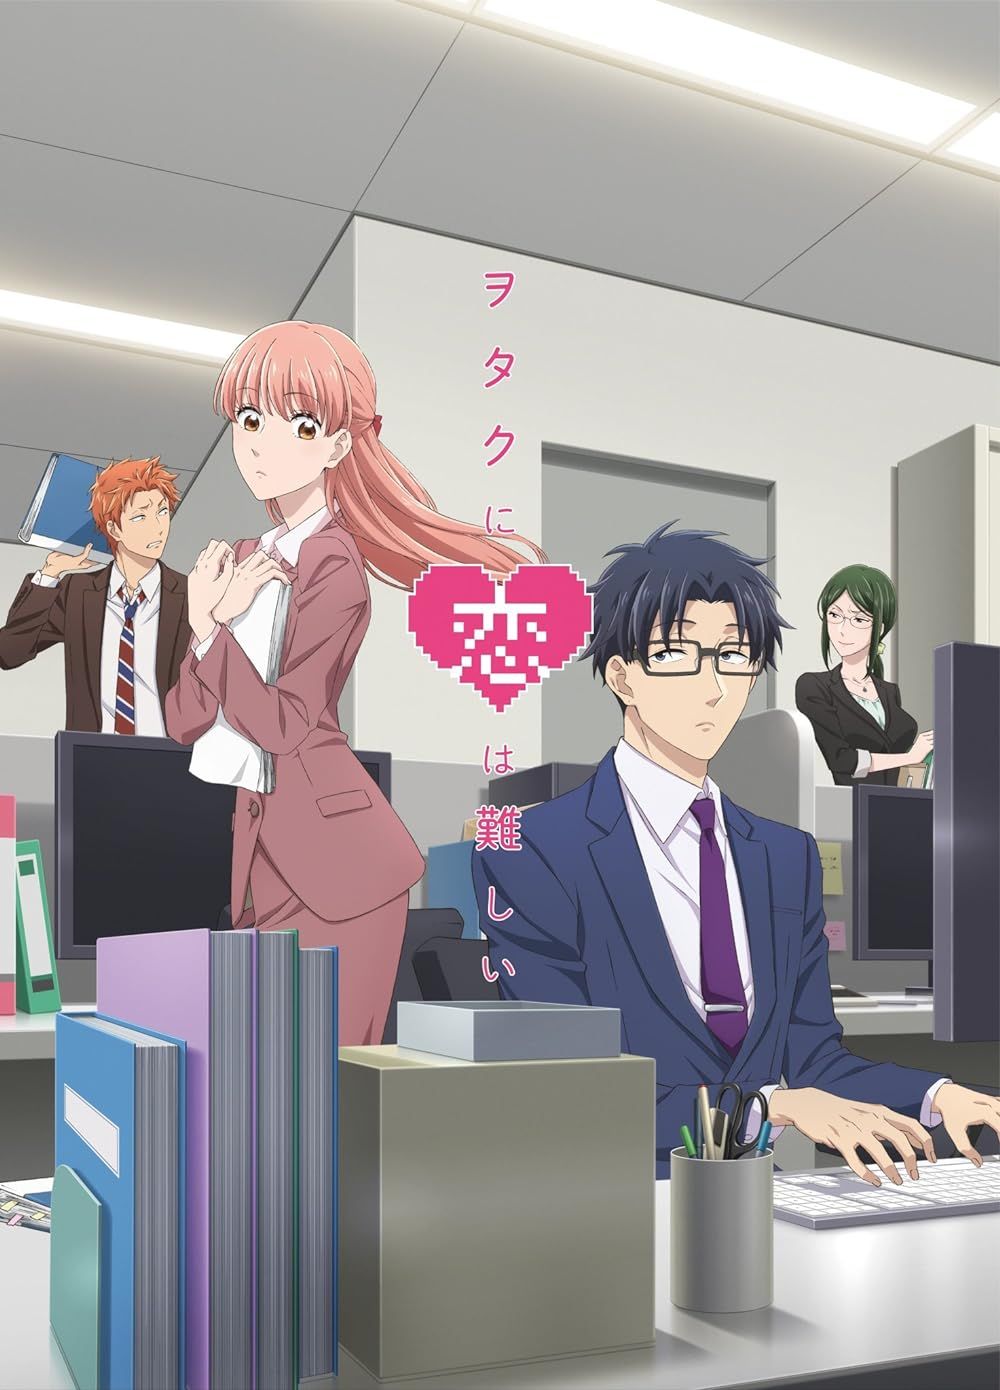 Narumi, Hirotaka, Hanako, and Taro on the poster for Wotakoi- Love Is Hard for Otaku